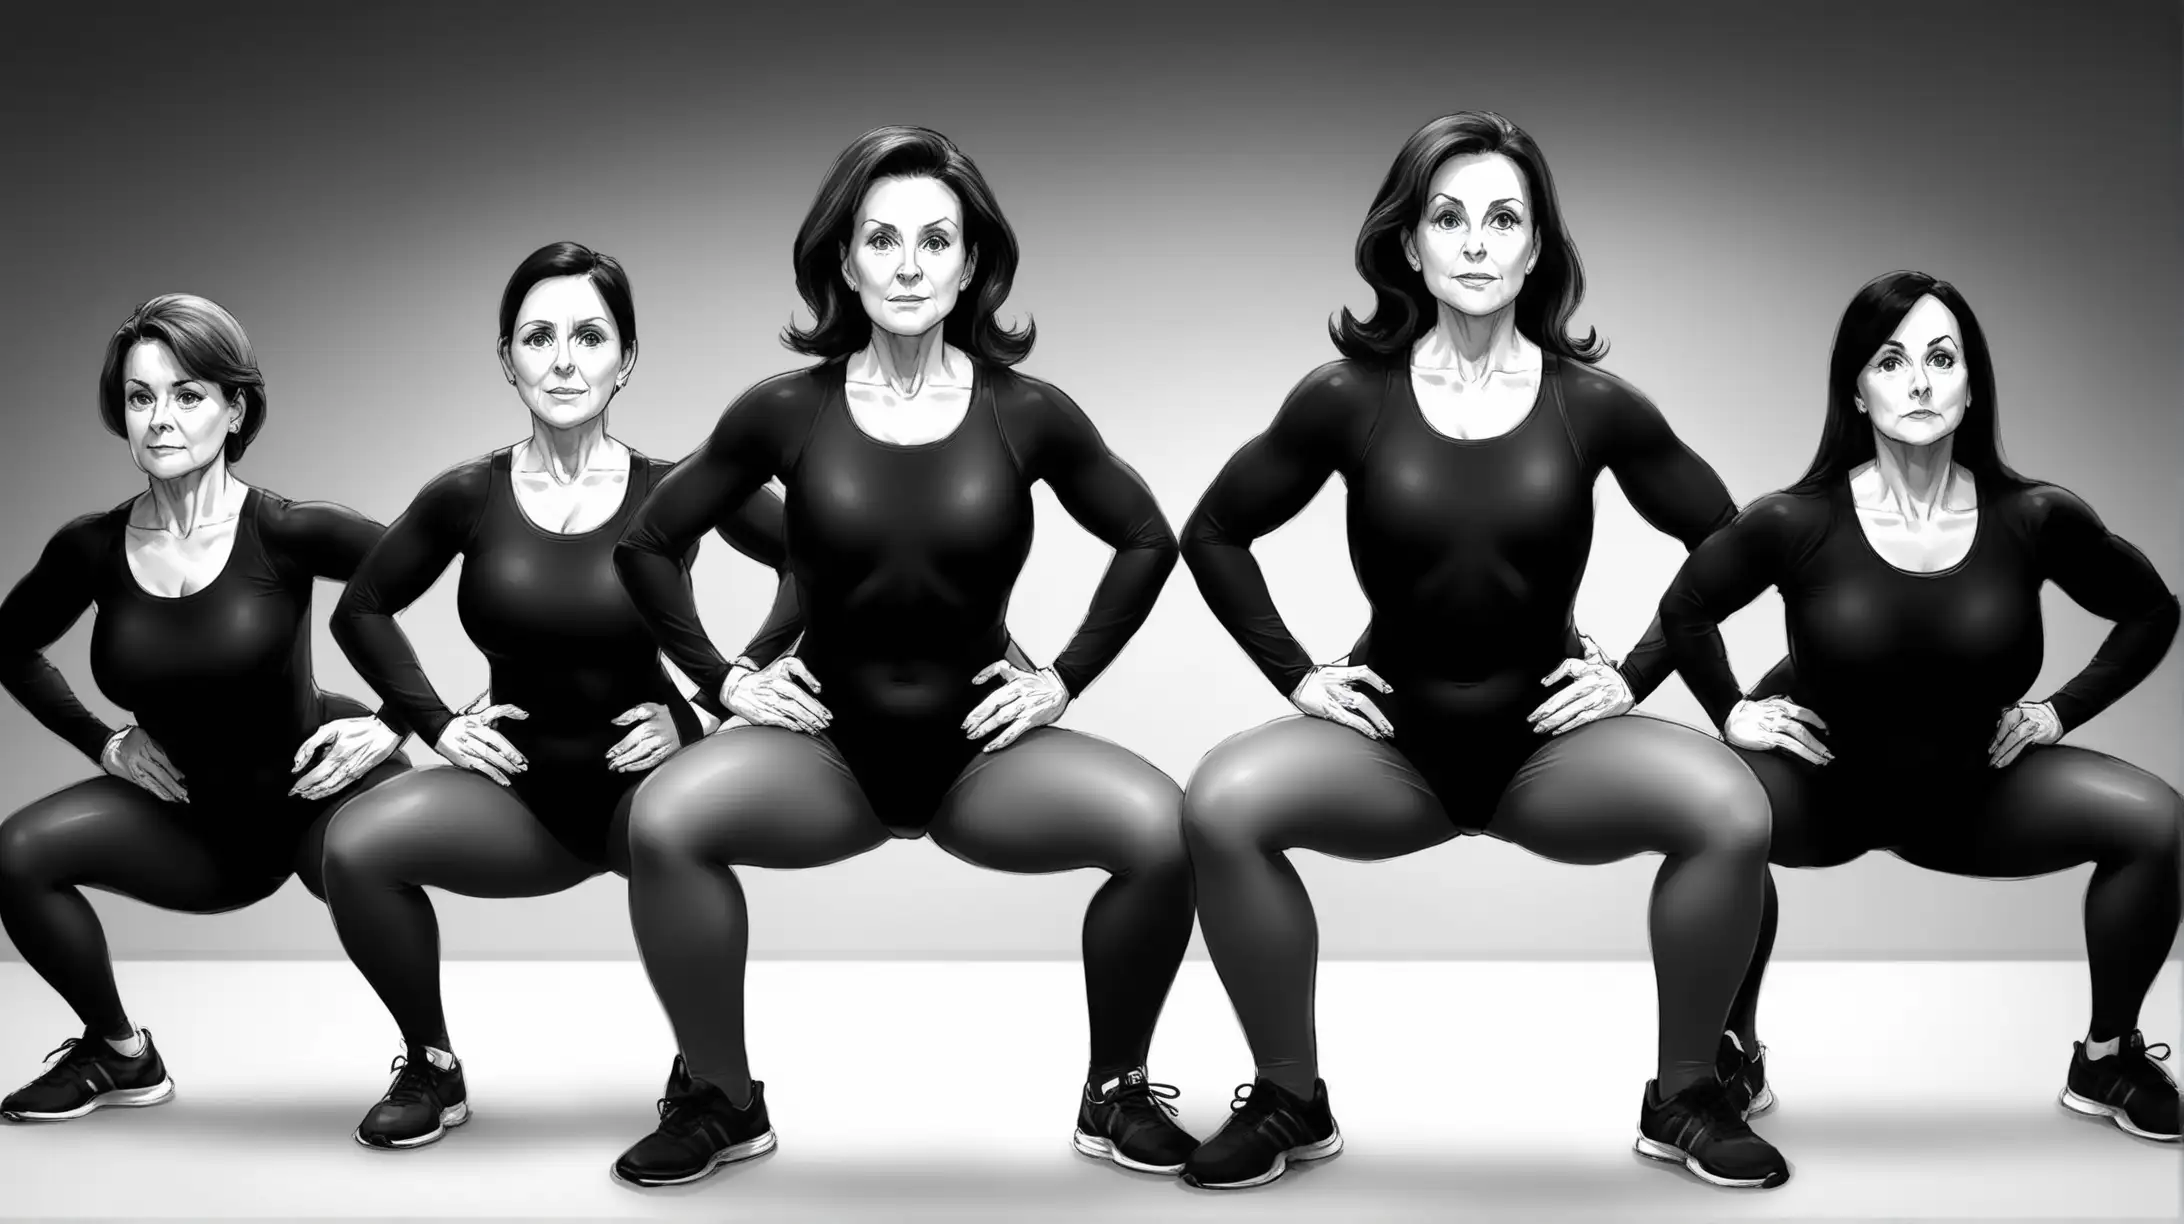 Brunette Women in Black Leotards Doing Squats Exercises